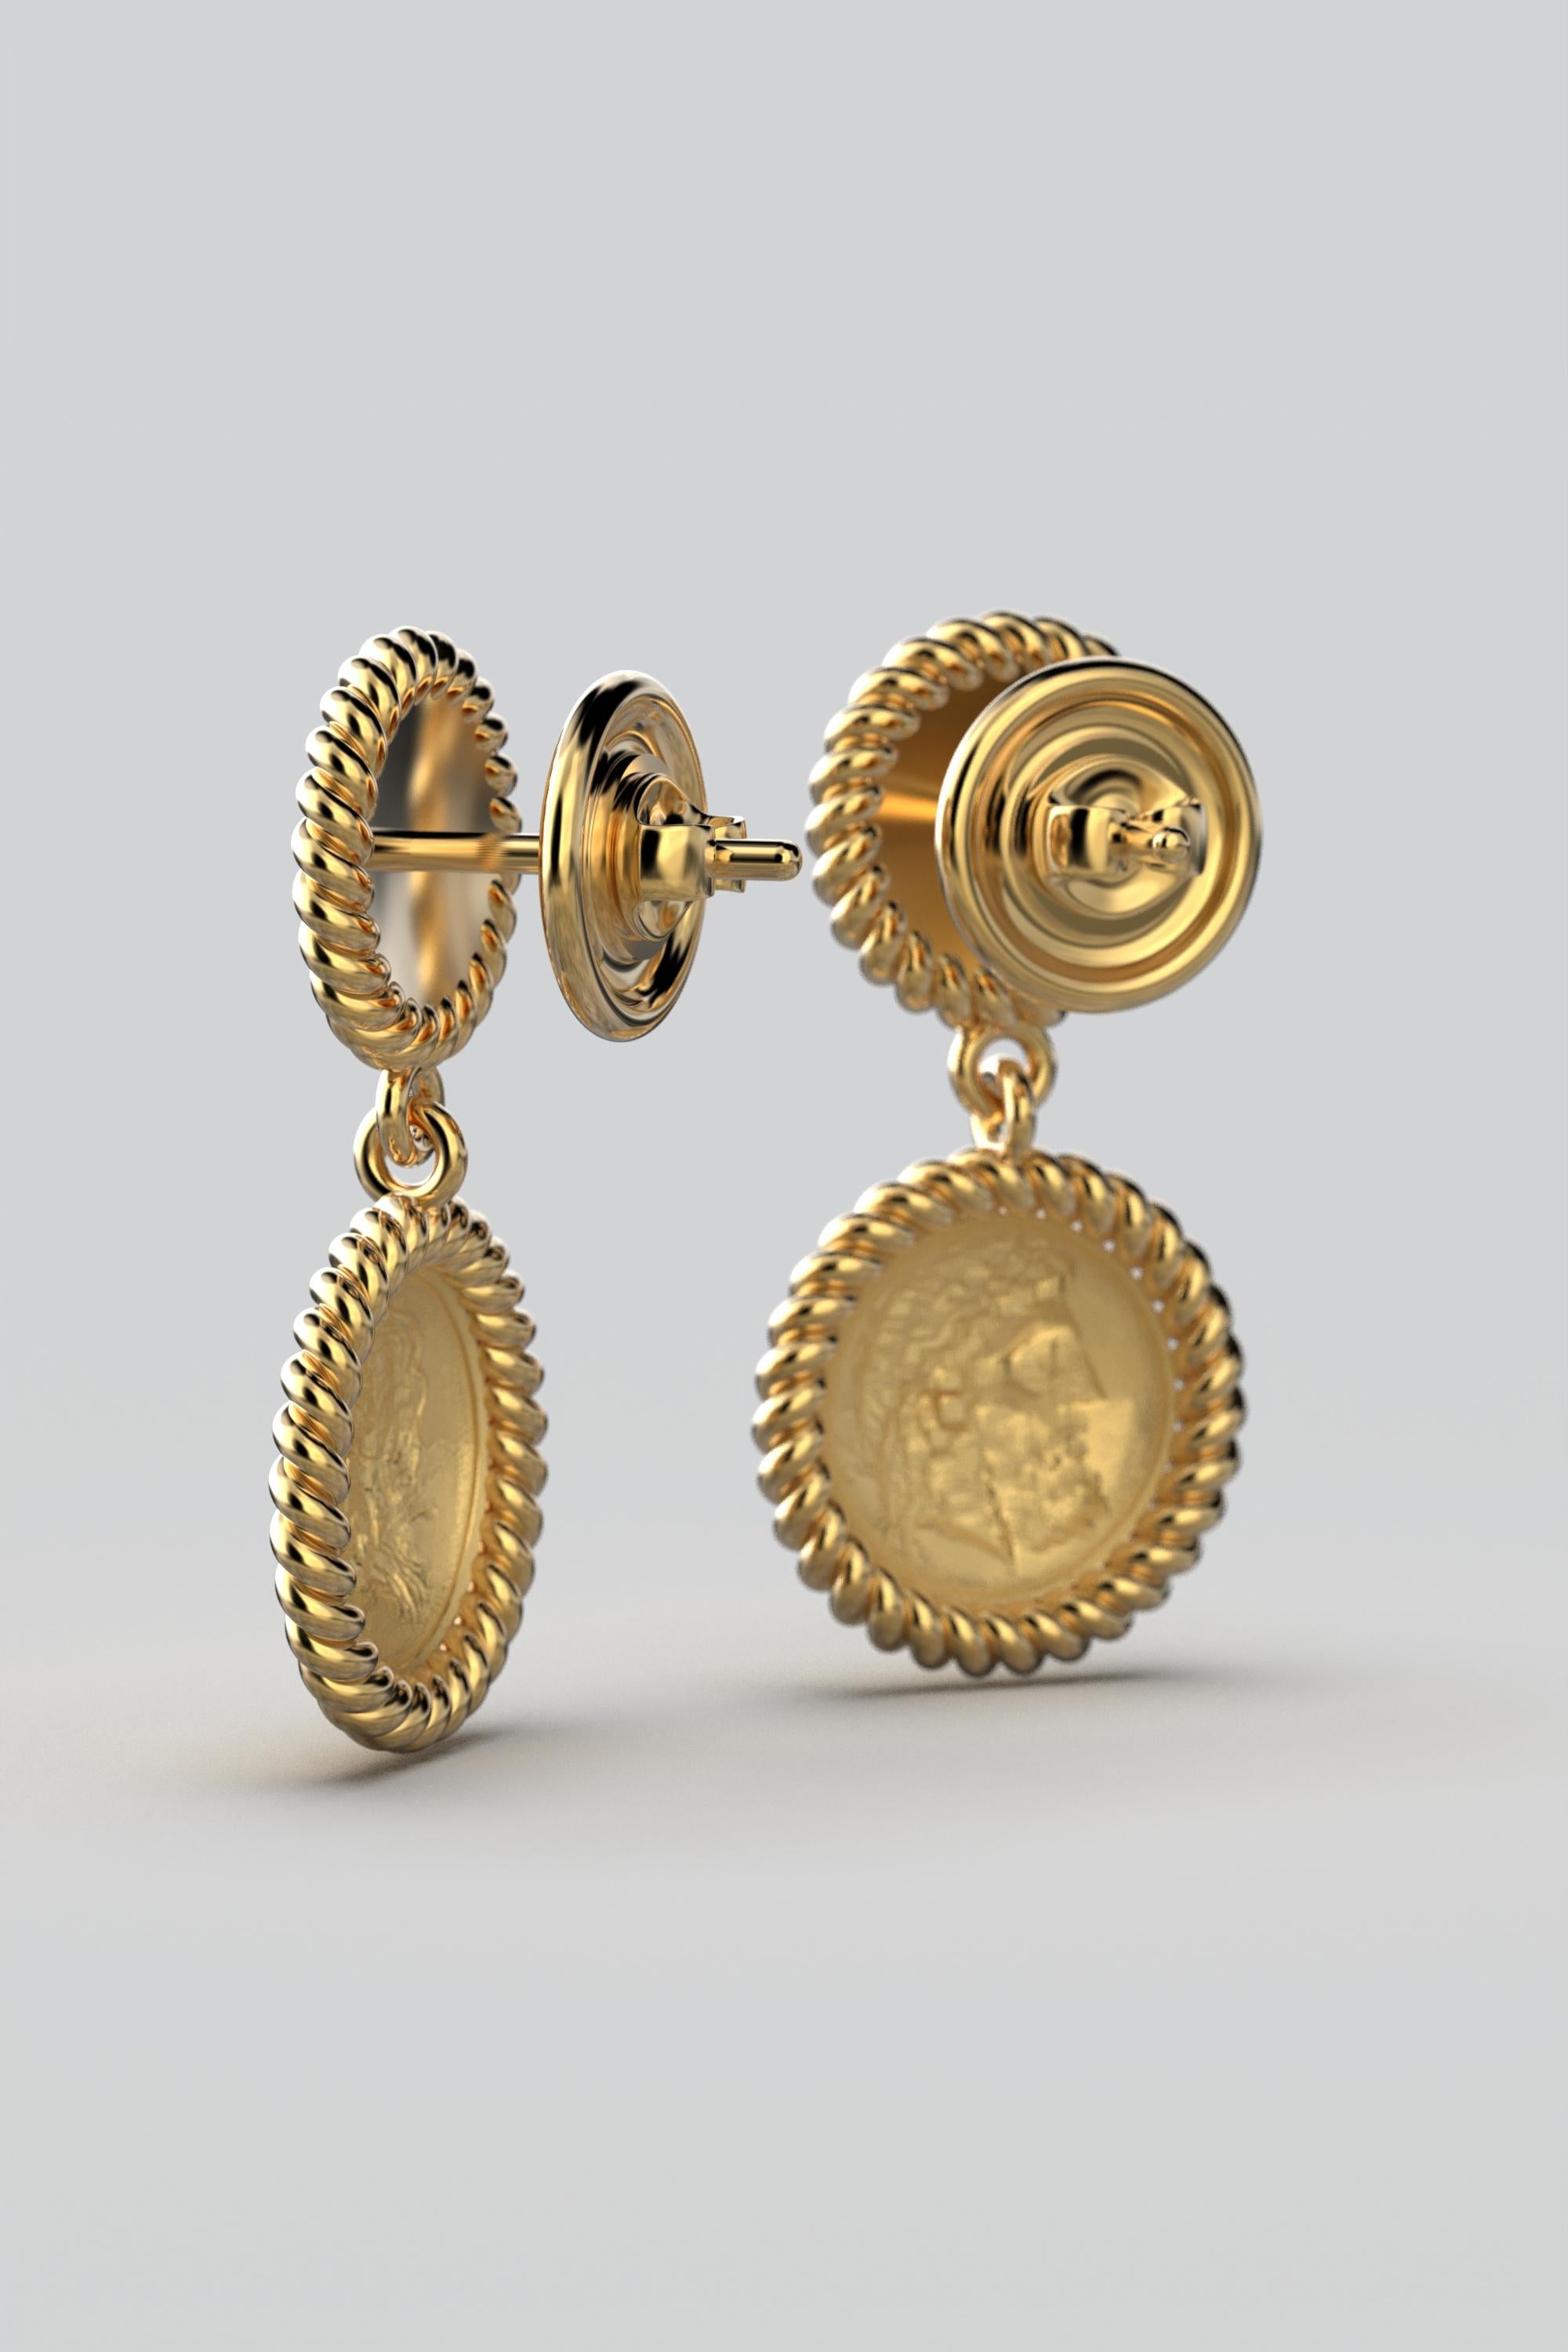 Women's Dangle Earrings in 18k solid Gold, Ancient Greek Style, Zeus Coin Earrings For Sale